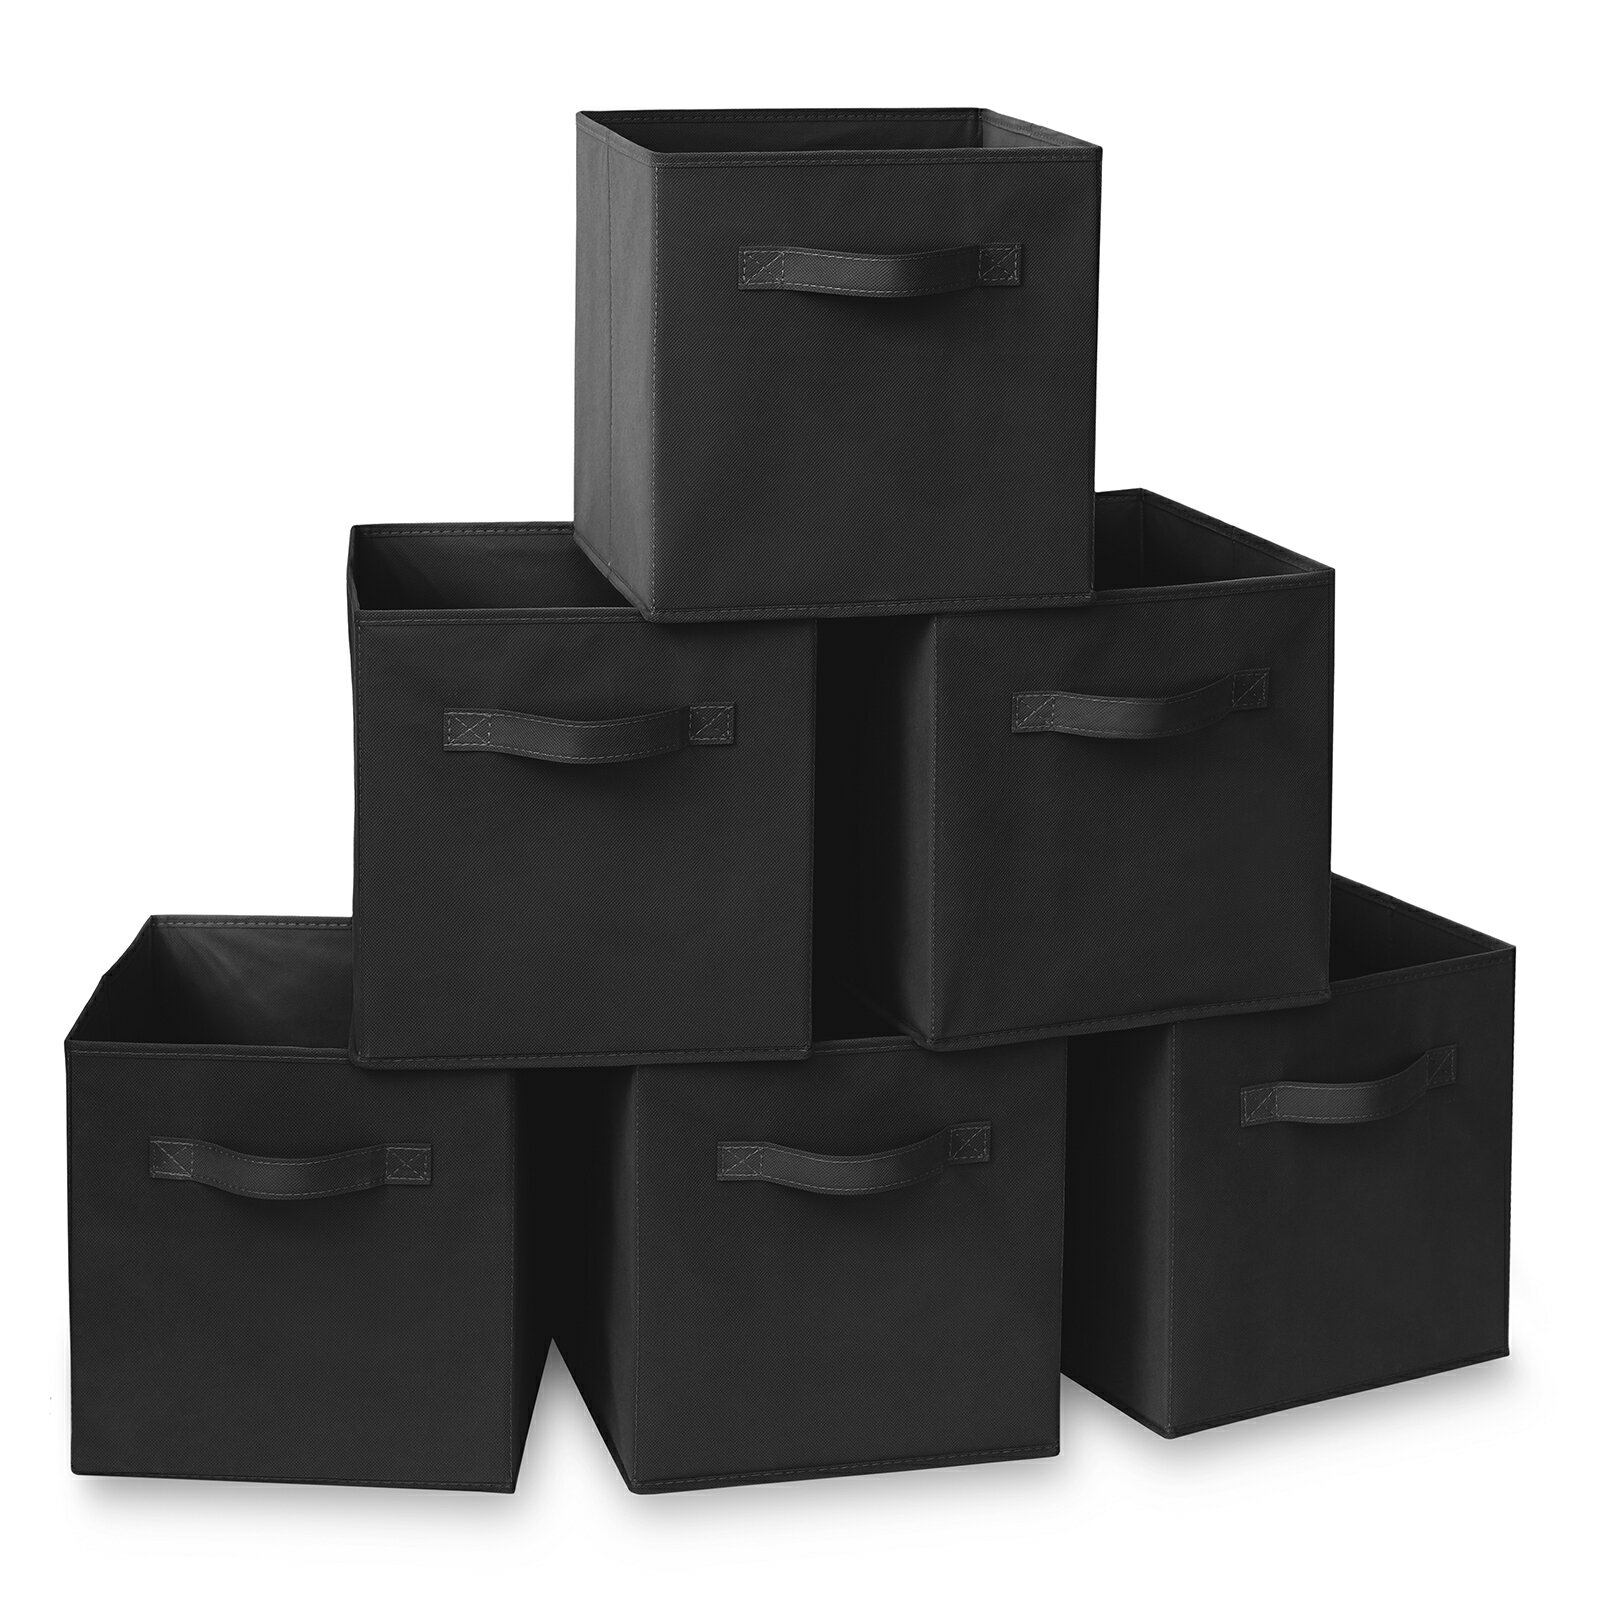 black storage baskets for shelves